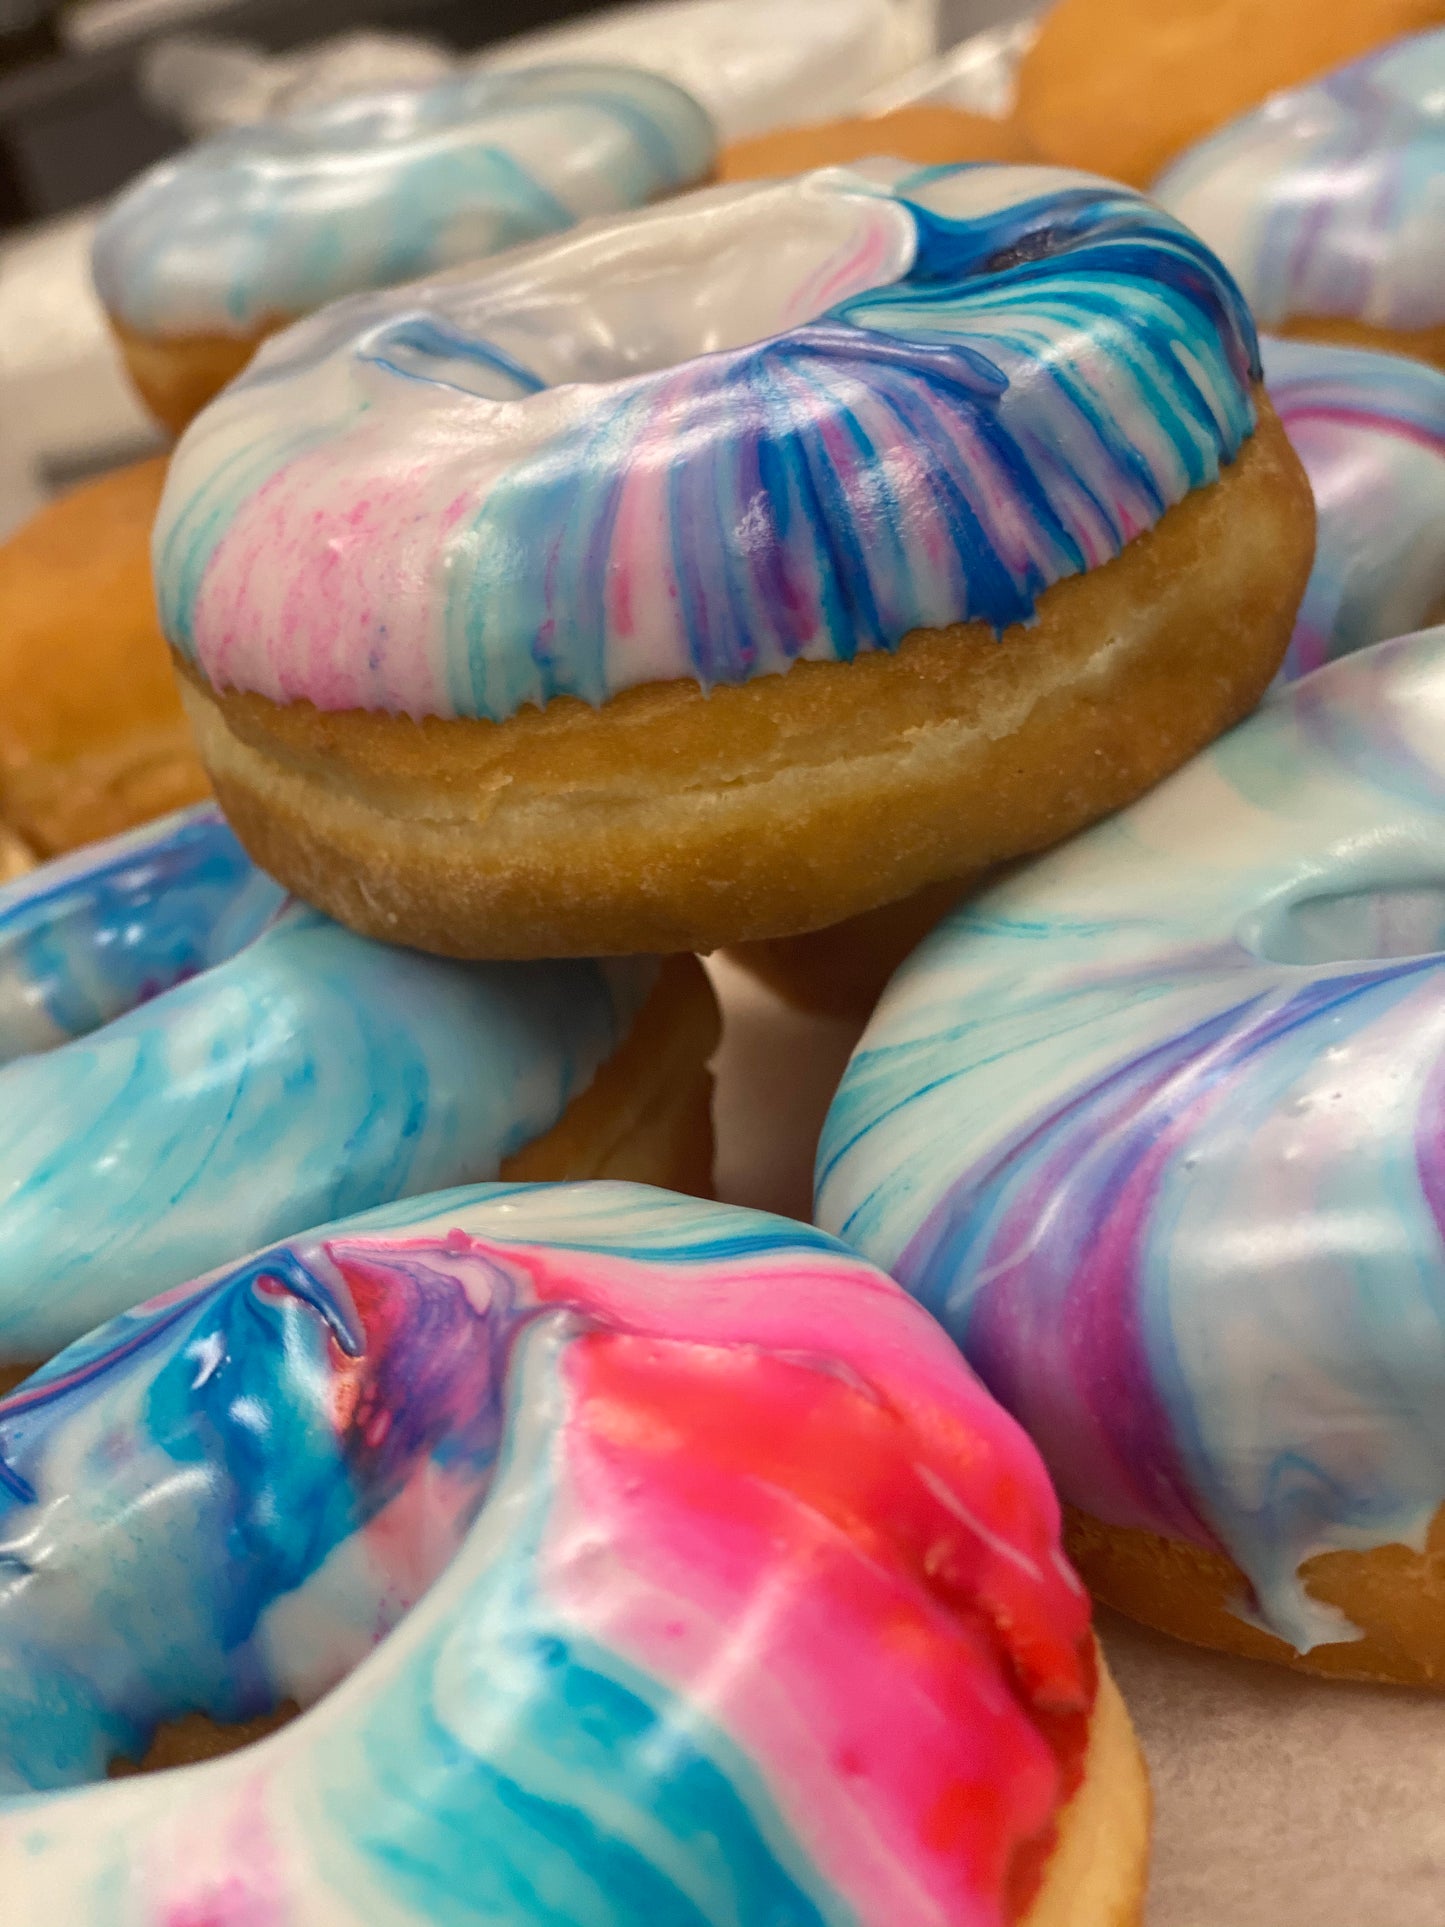 Galaxy Glazed Donuts